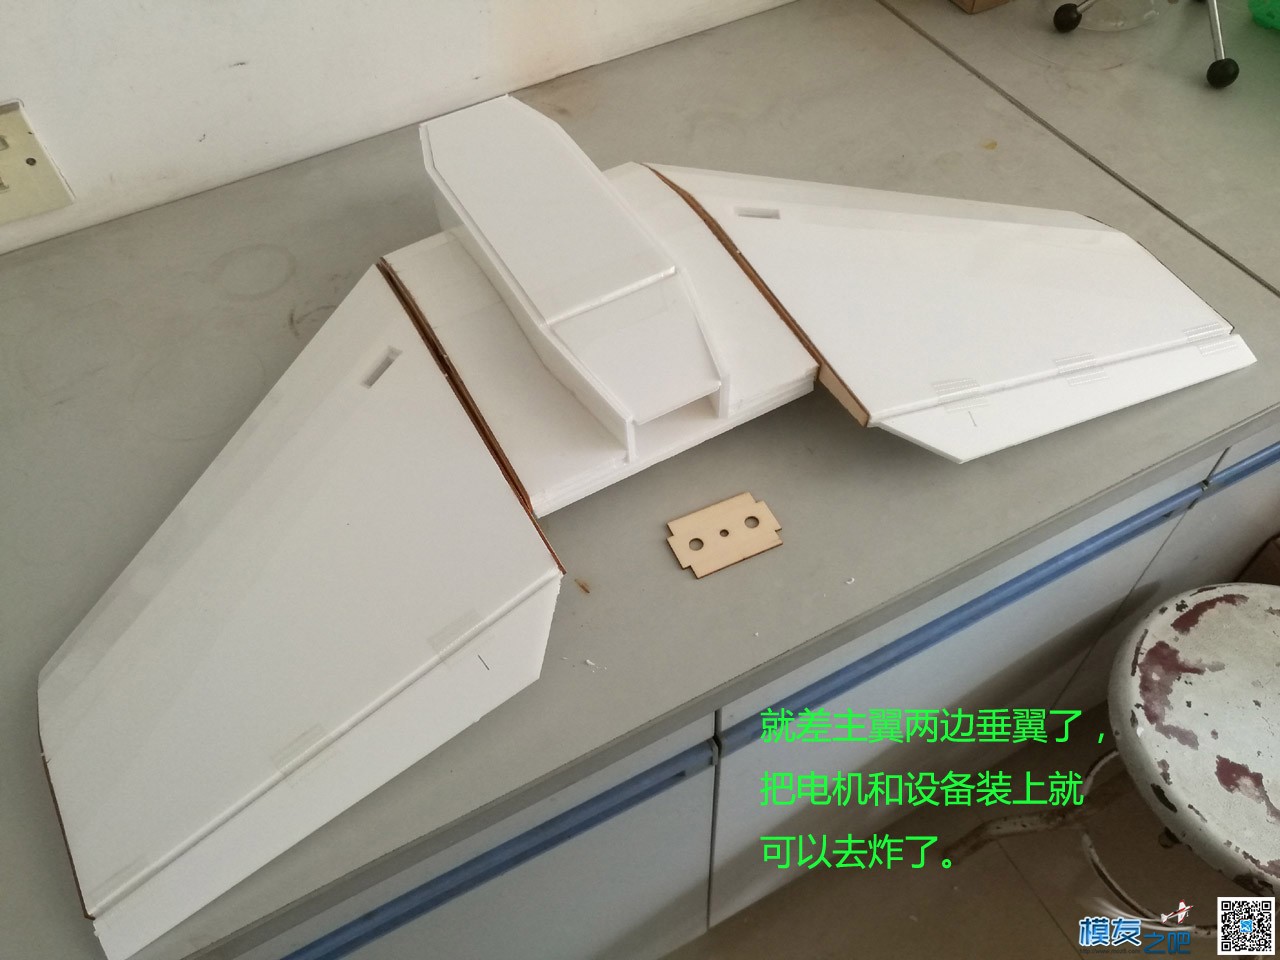 KT-780飞翼制作-3-电装设备组合 图纸,飞翼,电装vk22,nwb和电装,什么是电装 作者:peter33 9880 